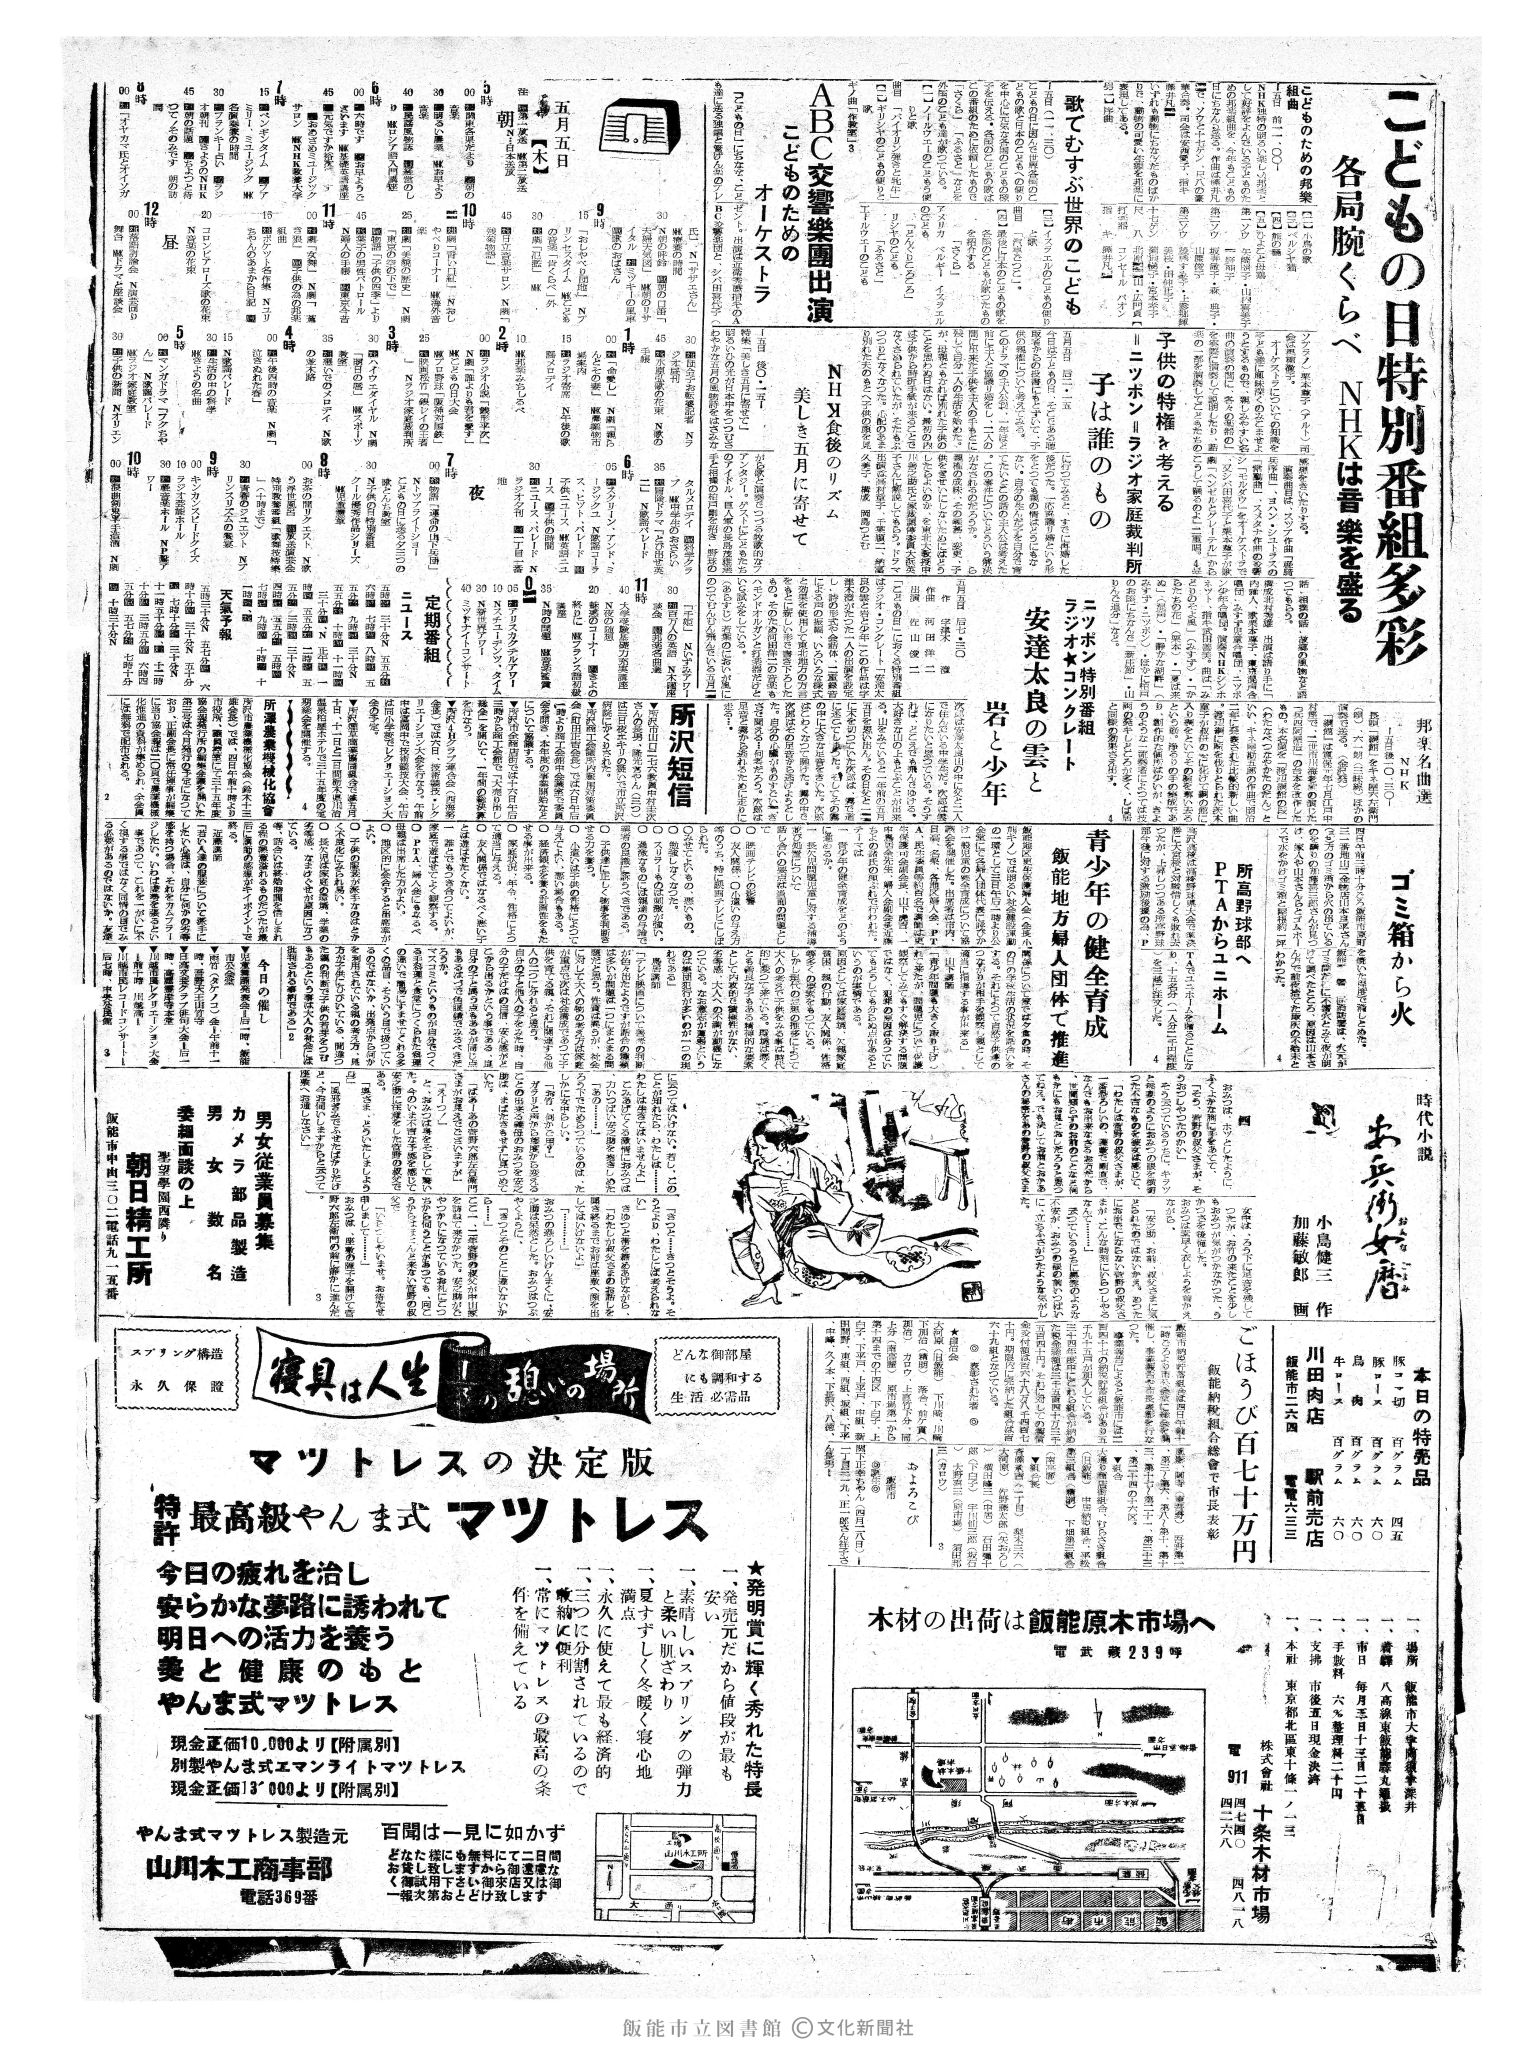 昭和35年5月5日2面 (第3522号) 3ページと同じ内容が印刷されています